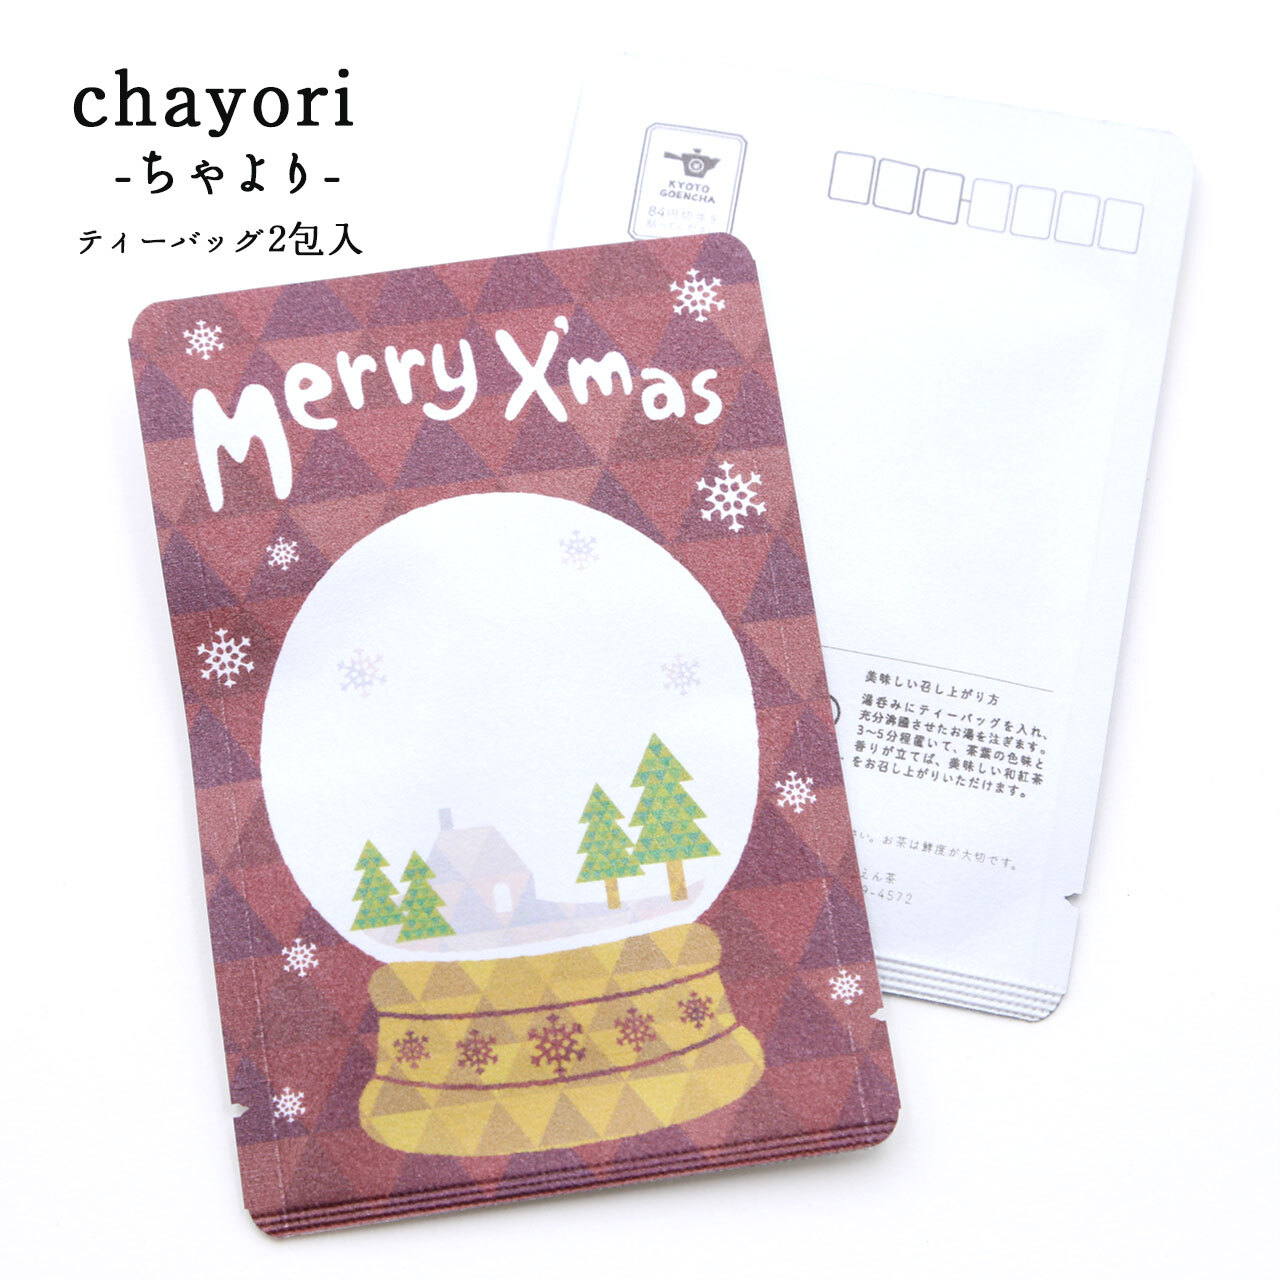 スノードーム Merry X Mas Chayori 和紅茶ティーバッグ2包入 お茶入りクリスマスカード 京都ぎょくろのごえん茶 おいしいたのしいお茶ギフトをお届けいたします